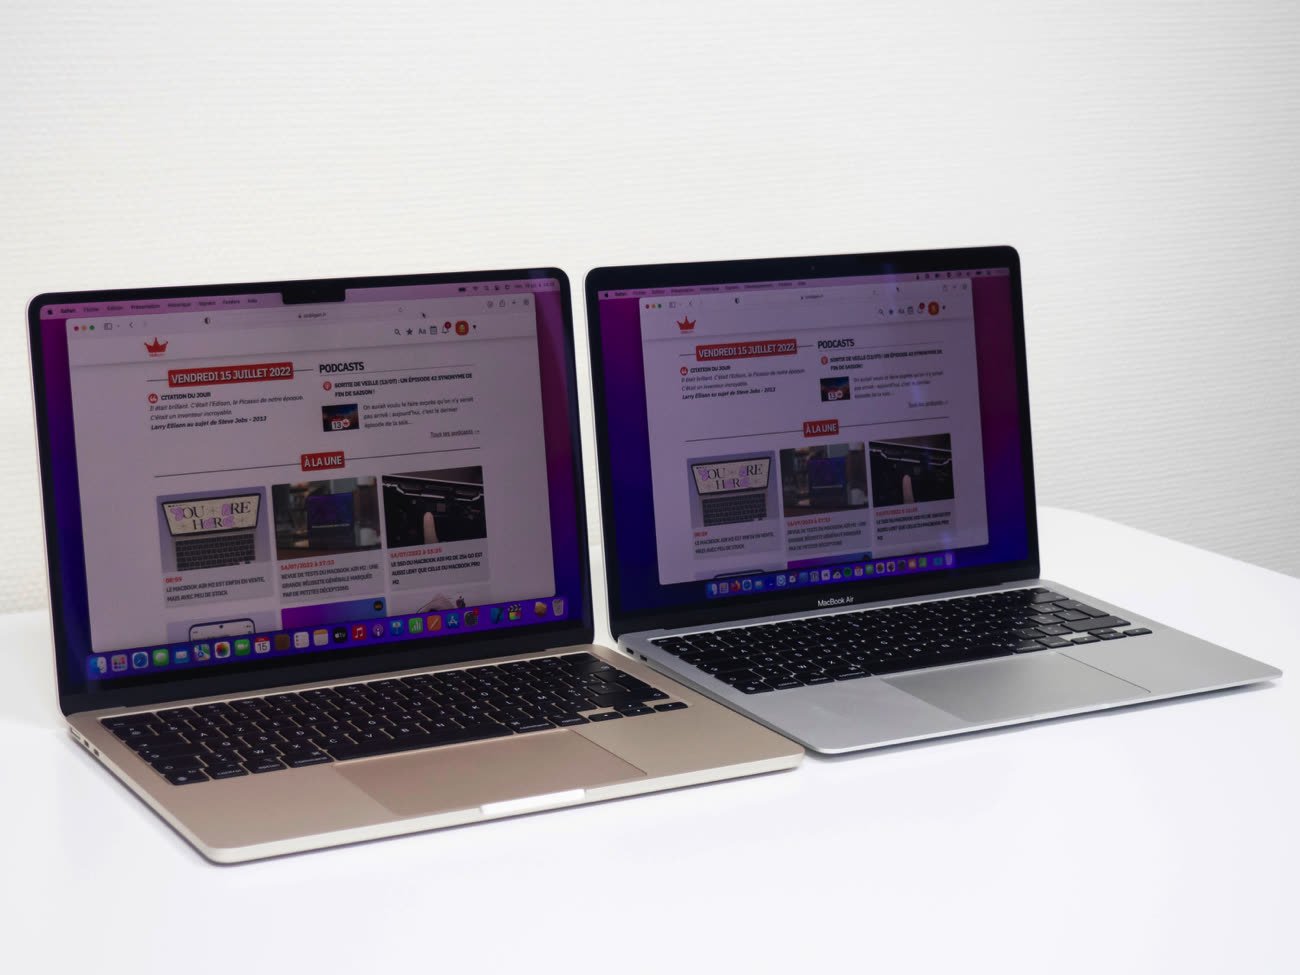 Le MacBook Air M1 passe sous les 900 € pour les soldes grâce à ce code  promo - Numerama